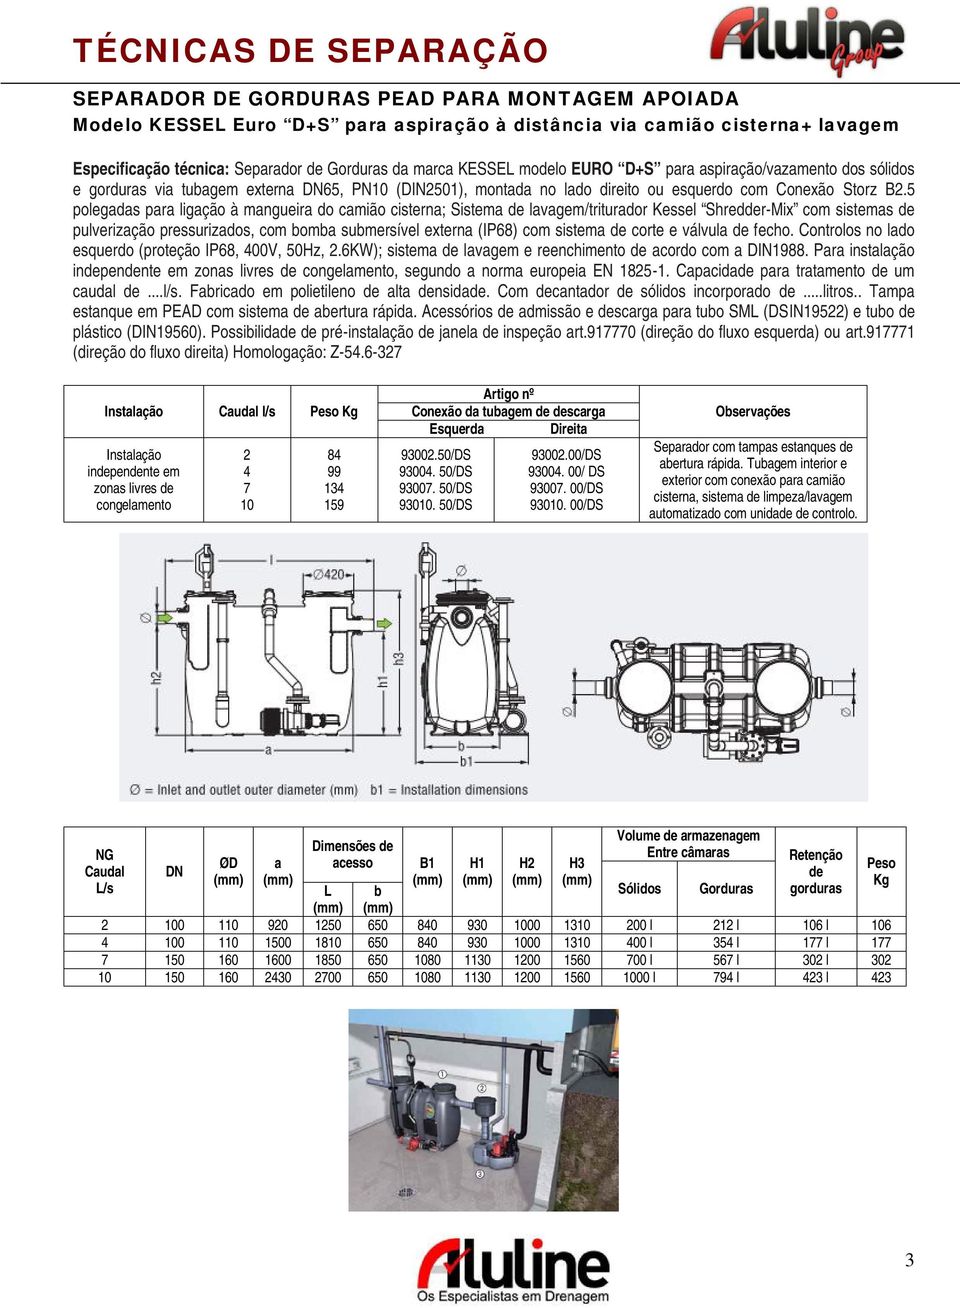 5 polegadas para ligação à mangueira do camião cisterna; Sistema de lavagem/triturador Kessel Shredder-Mix com sistemas de pulverização pressurizados, com bomba submersível externa (IP68) com sistema